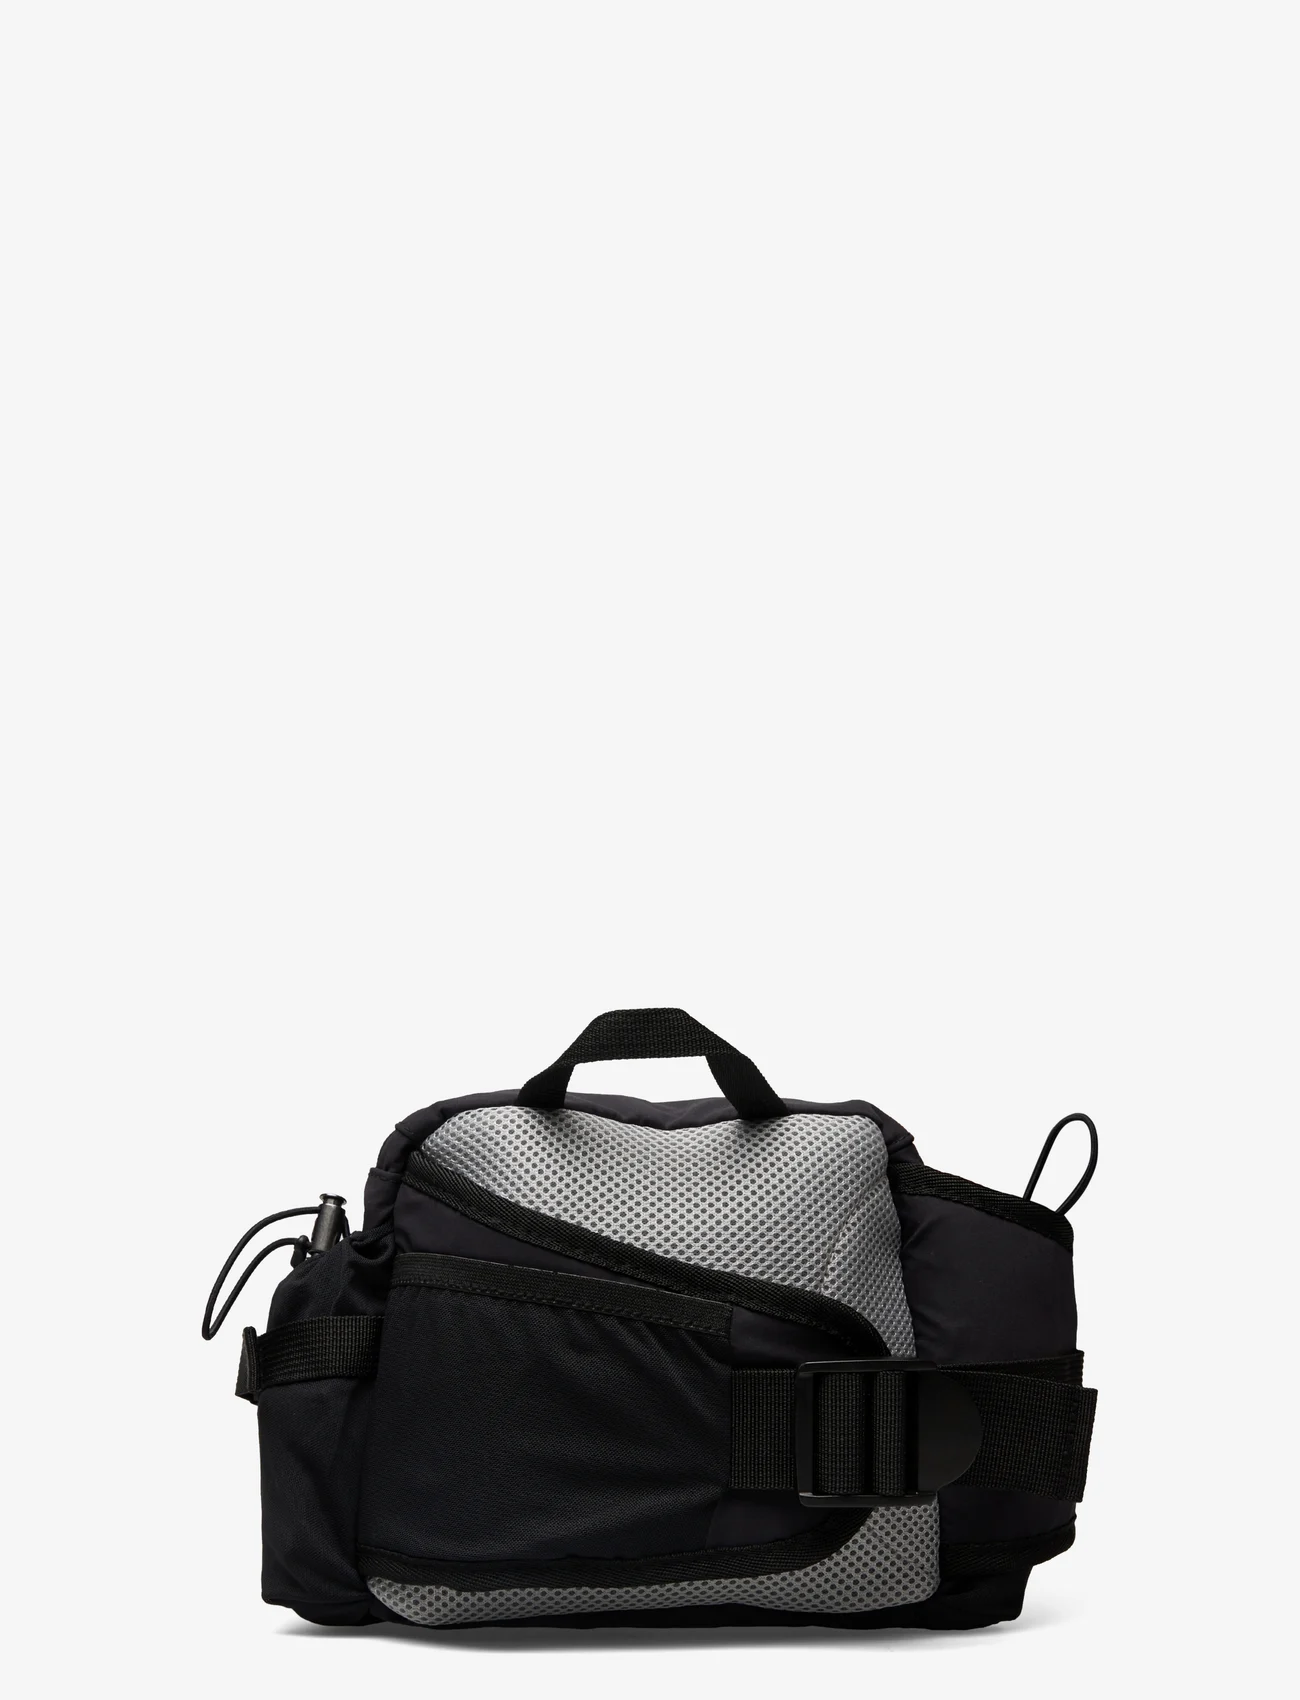 Johaug - Adapt Bum Bag 2.0 - sporttaschen - black - 1